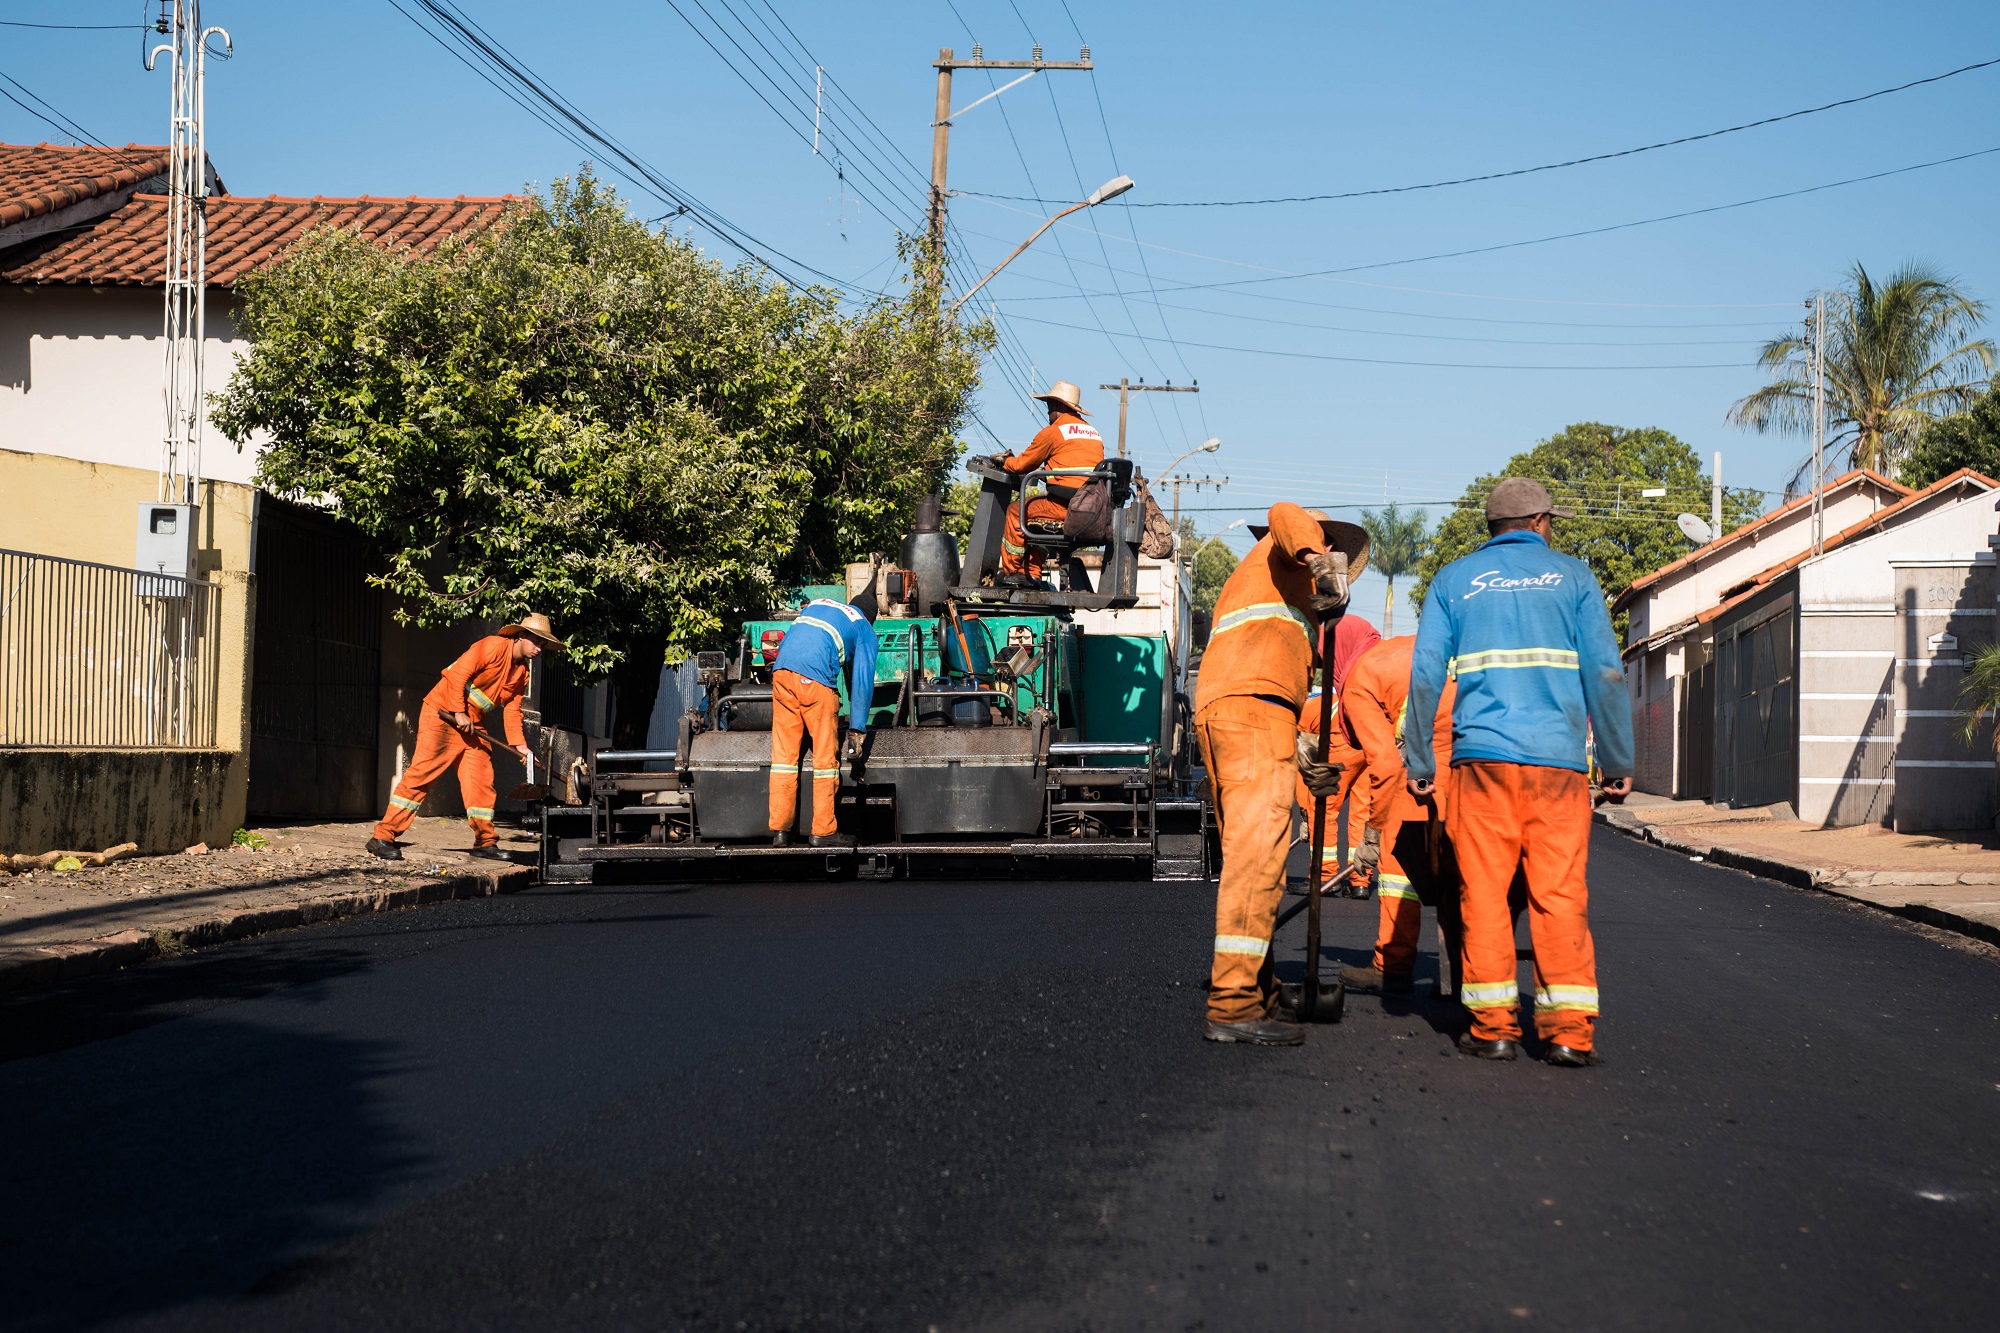 Prefeitura já recapeou diversos trechos de ruas em 2018. Próximas obras acontecem em 2019. Foto: [Arquivo] Luís Fernando da Silva / Prefeitura Municipal de Urupês.